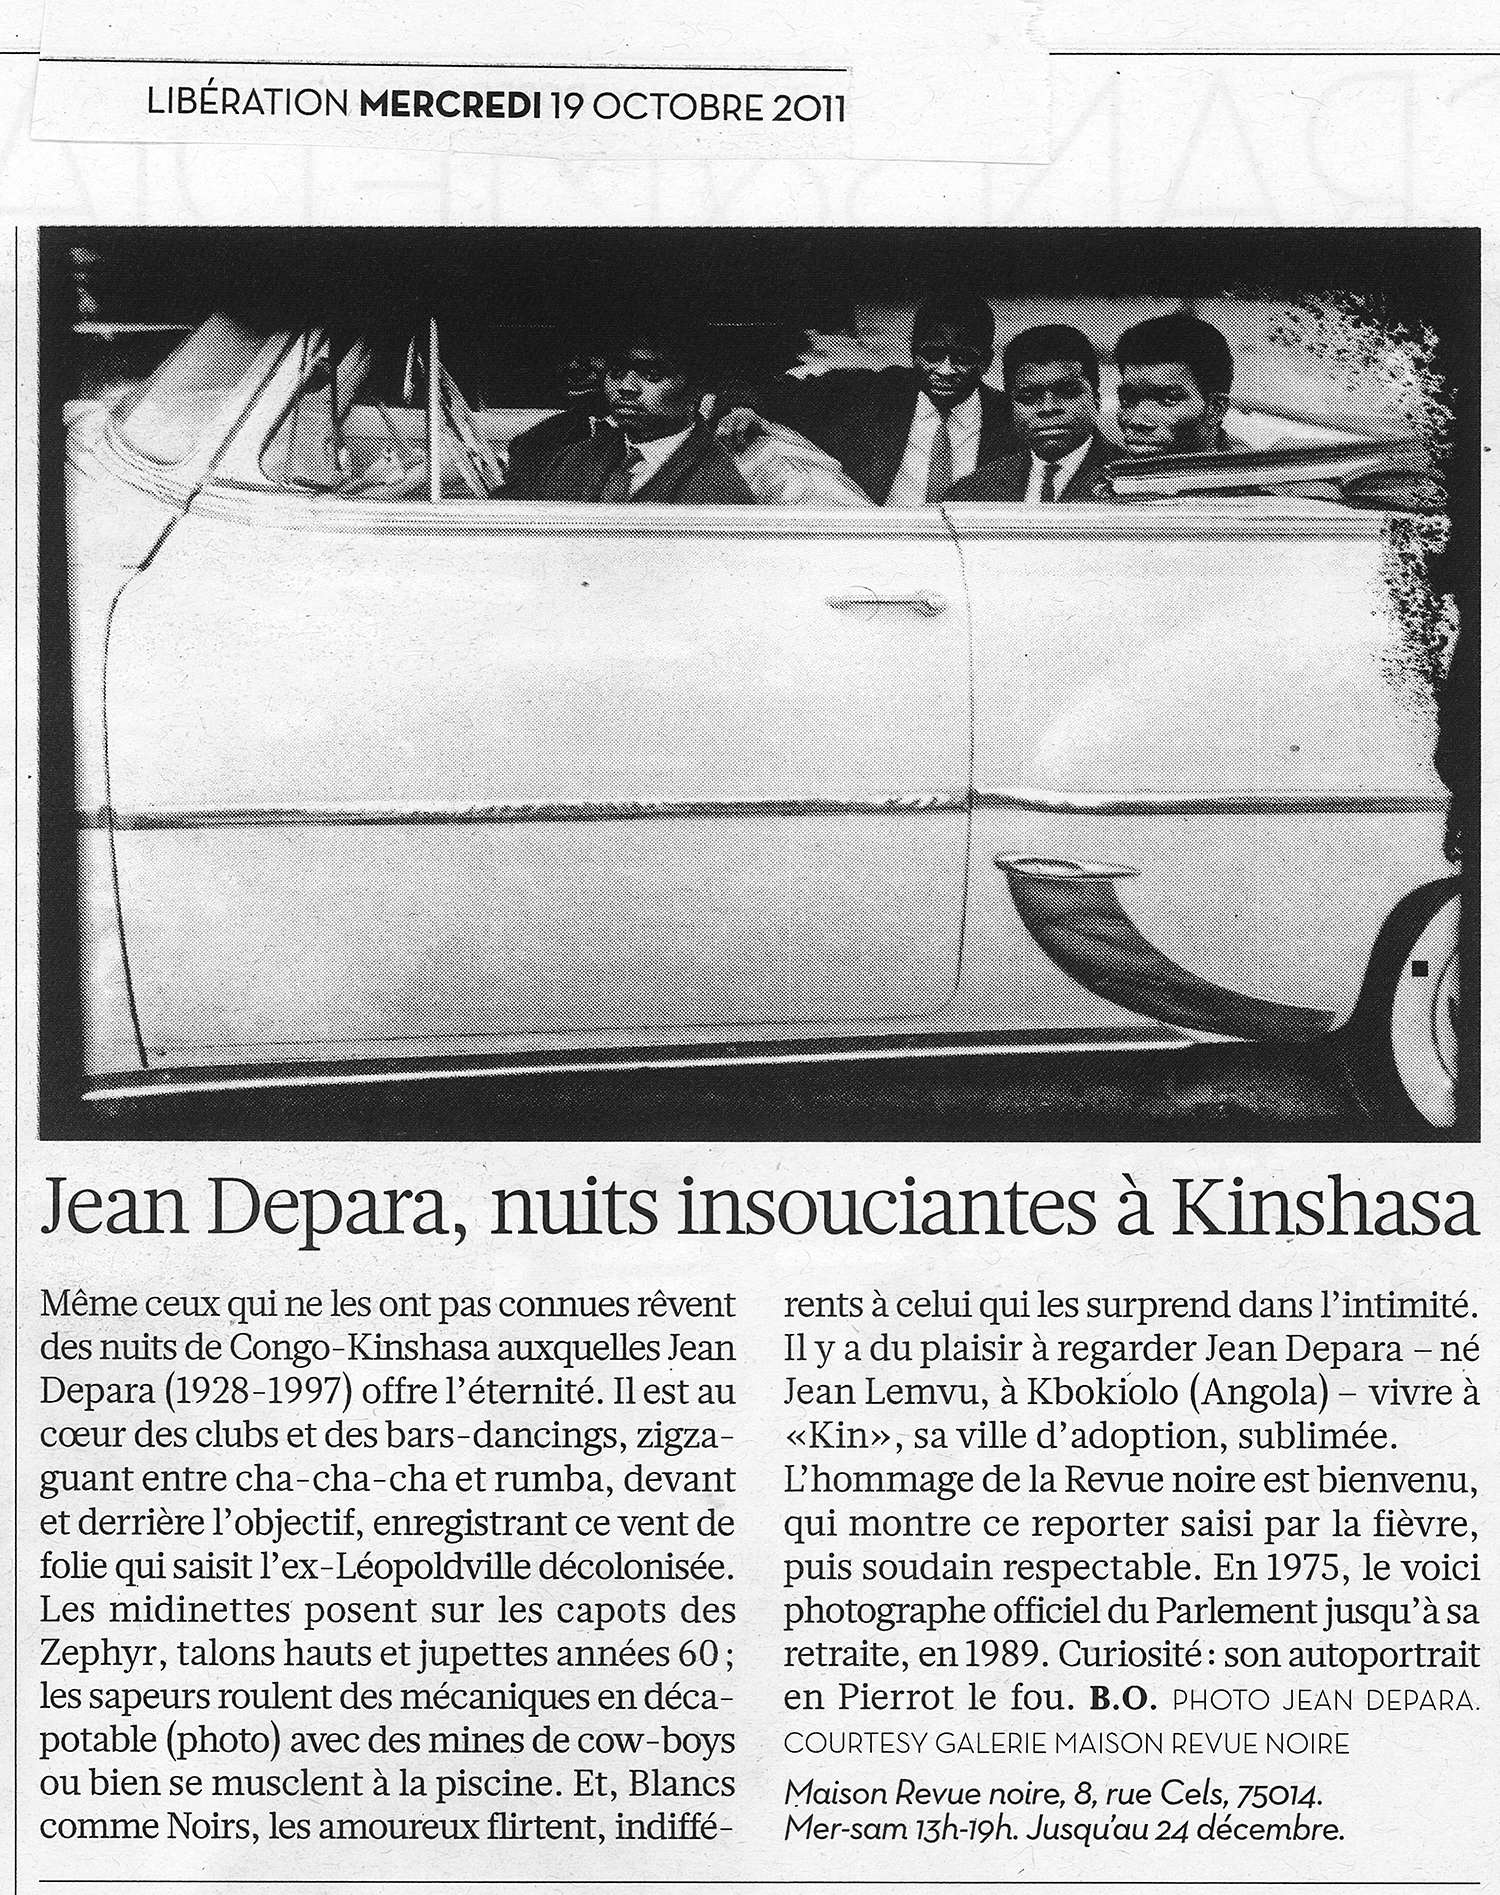 Revue Noire revue de presse: Le Monde octobre 2011, par Brigitte Olier. Jean Depara, nuits insouciantes à Kinshasa, expo Jean Depara